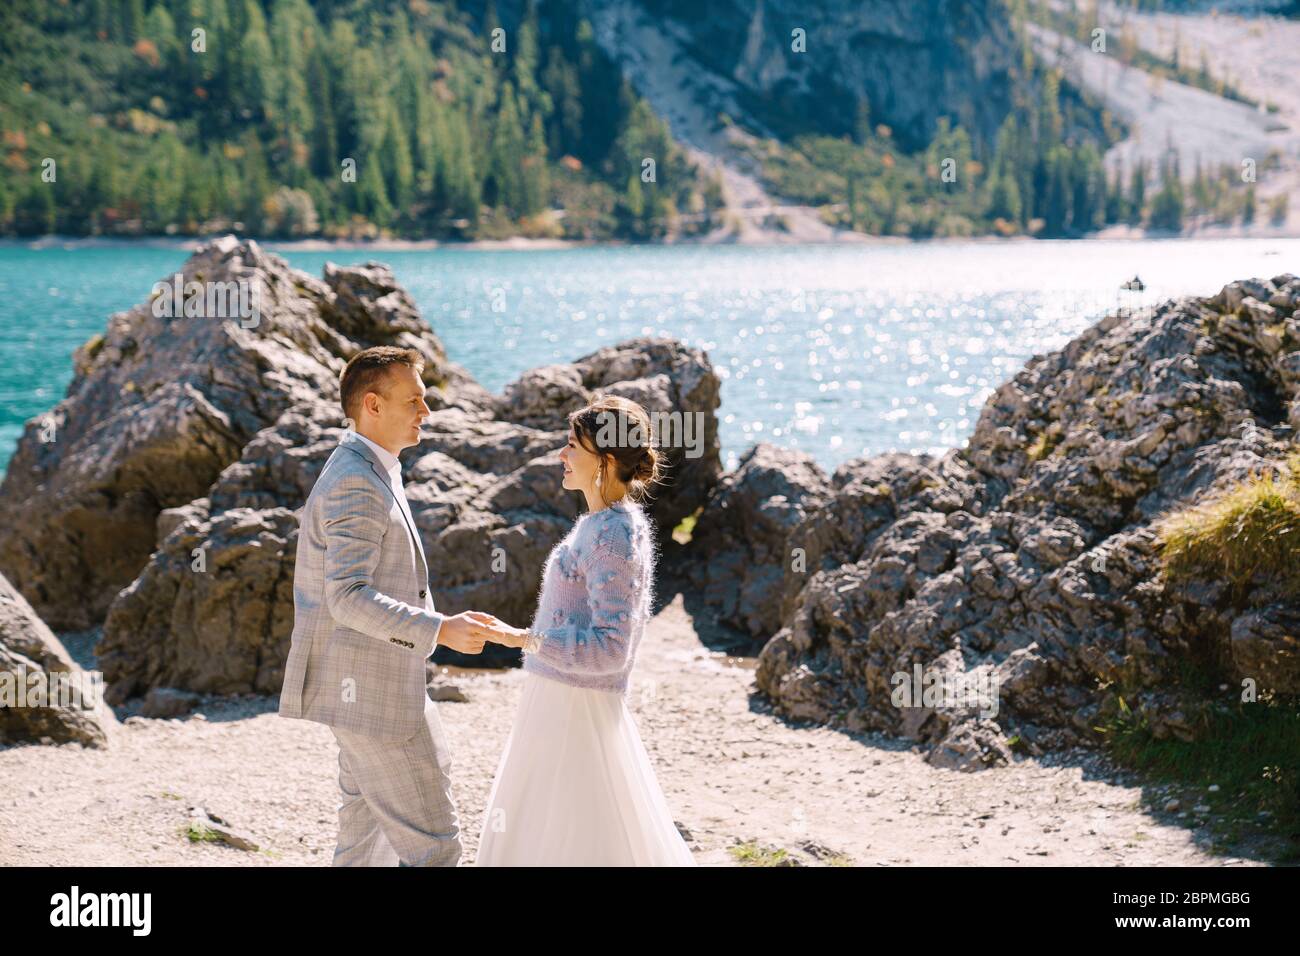 Les mariés se tiennent sur fond de pierres surplombant Lago di Braies en Italie. Mariage de destination en Europe, sur le lac de Braies. Aimant Banque D'Images